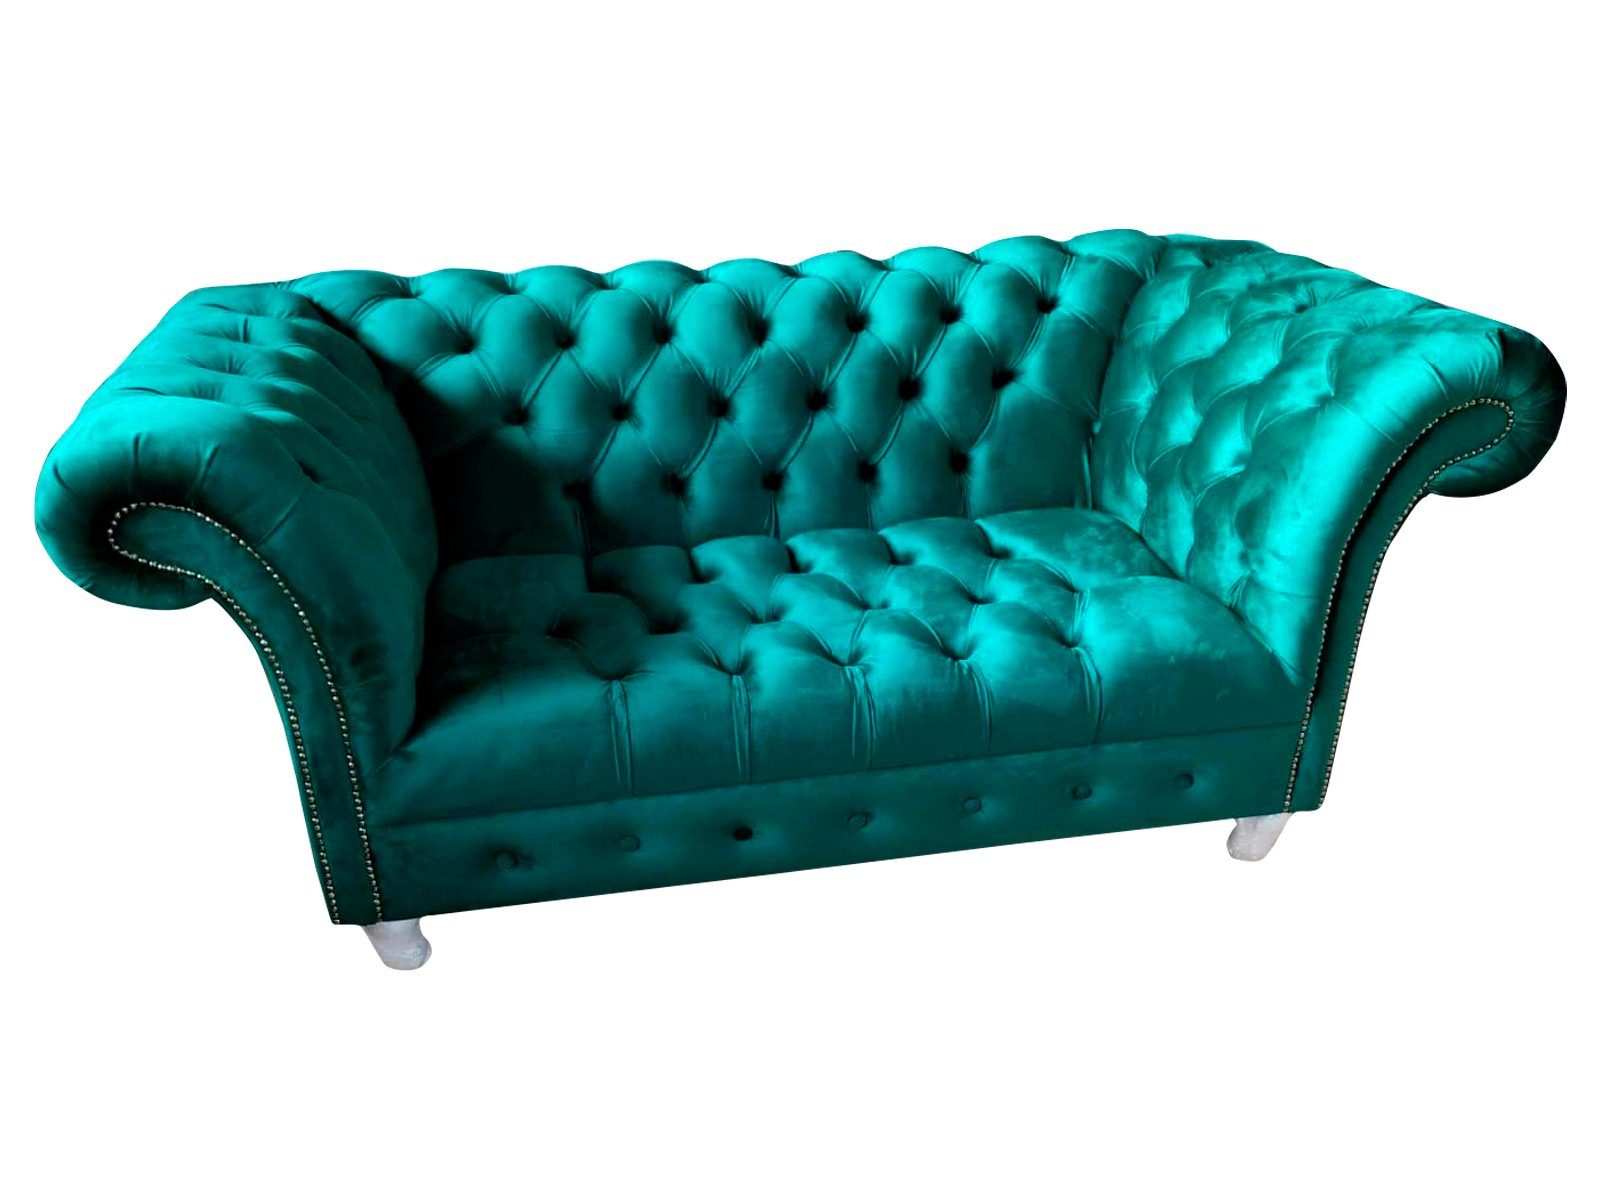 JVmoebel Sofa, Chesterfield Luxus Blau Sitzer Textil Couchen Grüne Sofas Sofa Couch 2